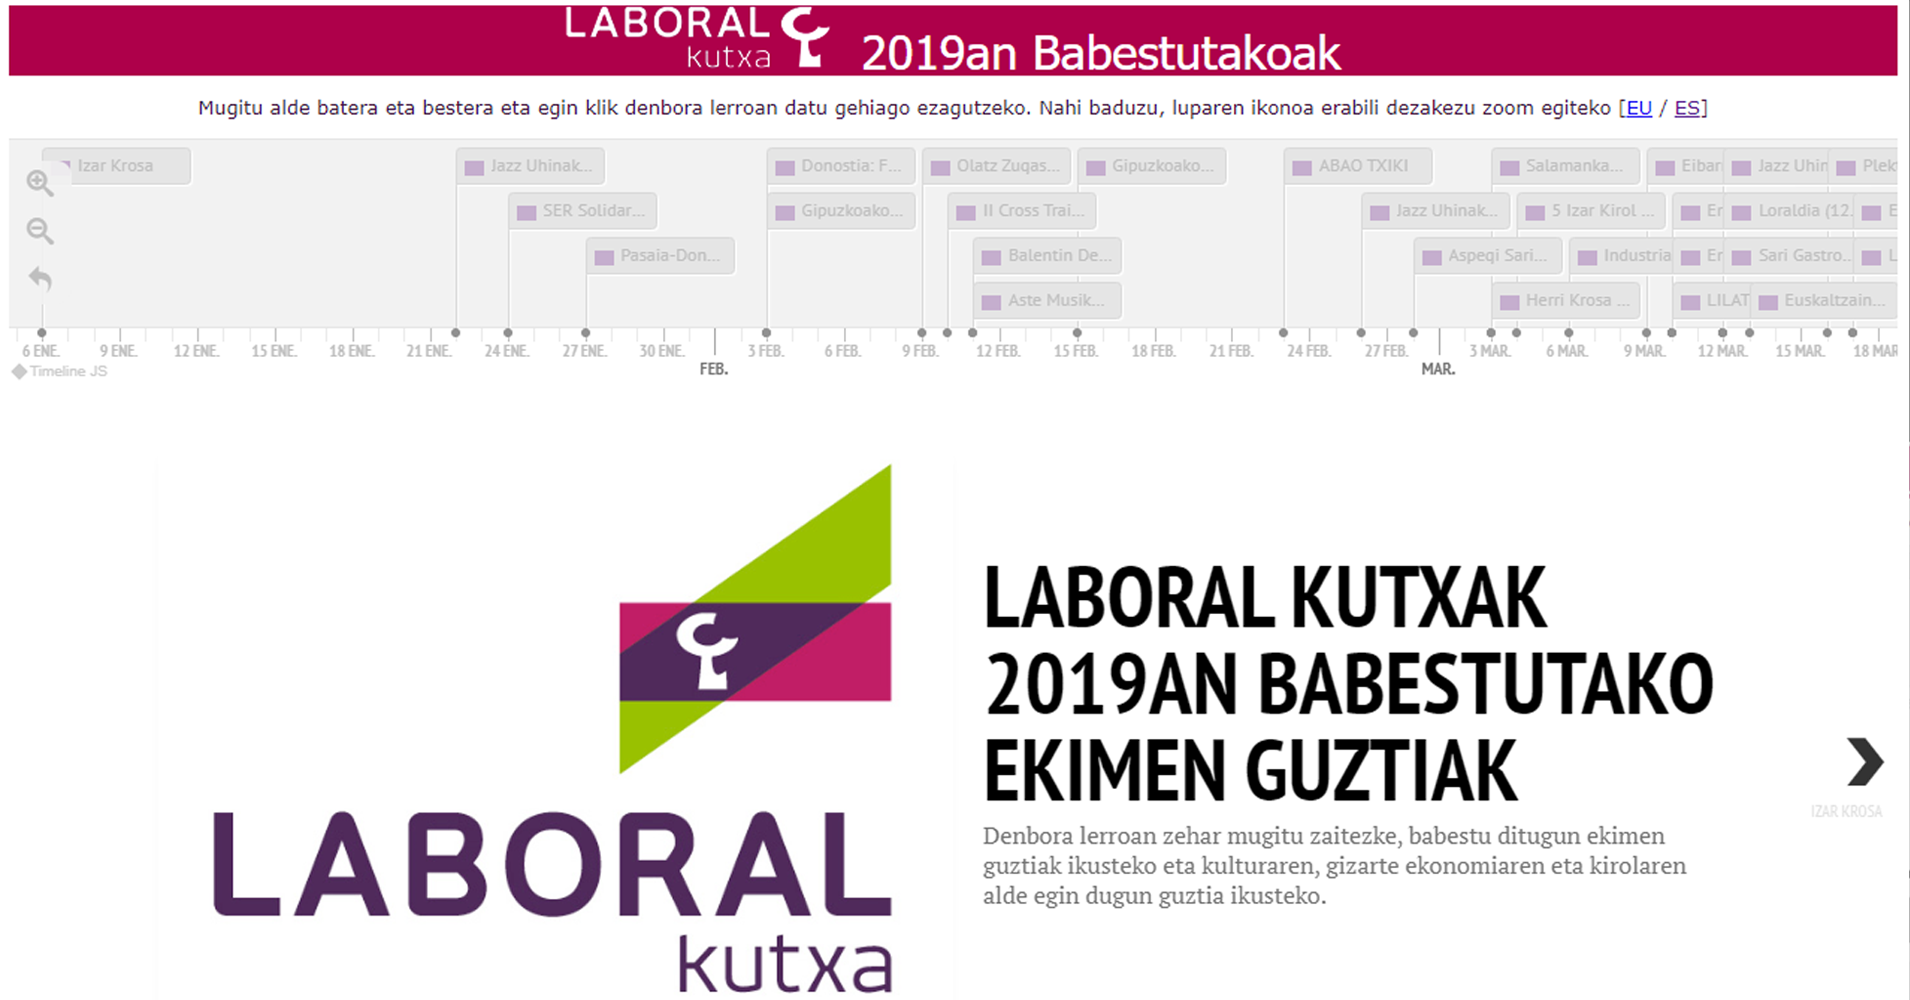 Colaboraciones y patrocinios de LABORAL Kutxa en 2019